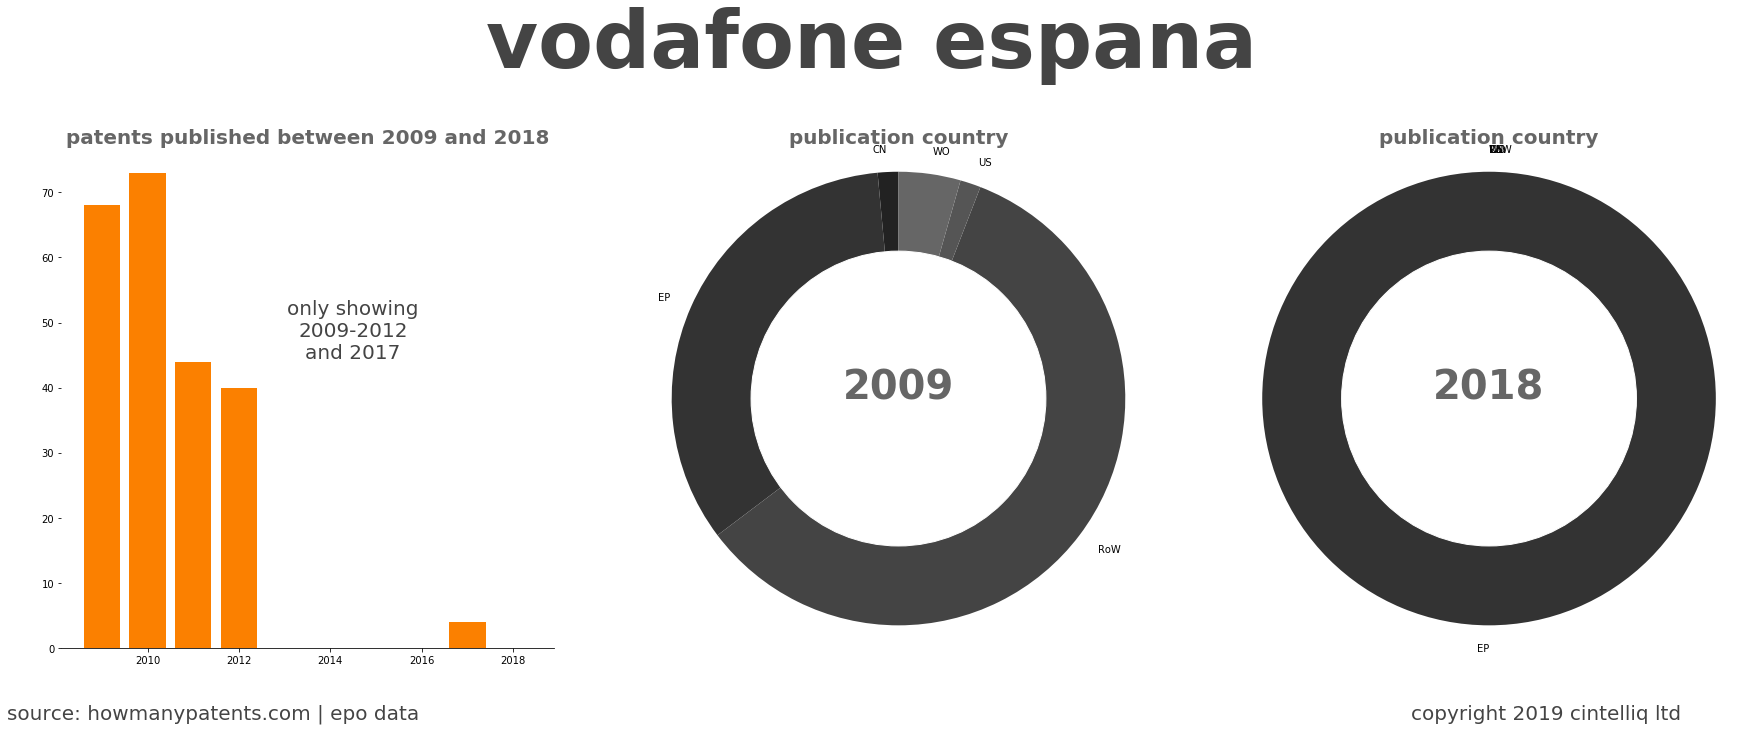 summary of patents for Vodafone Espana